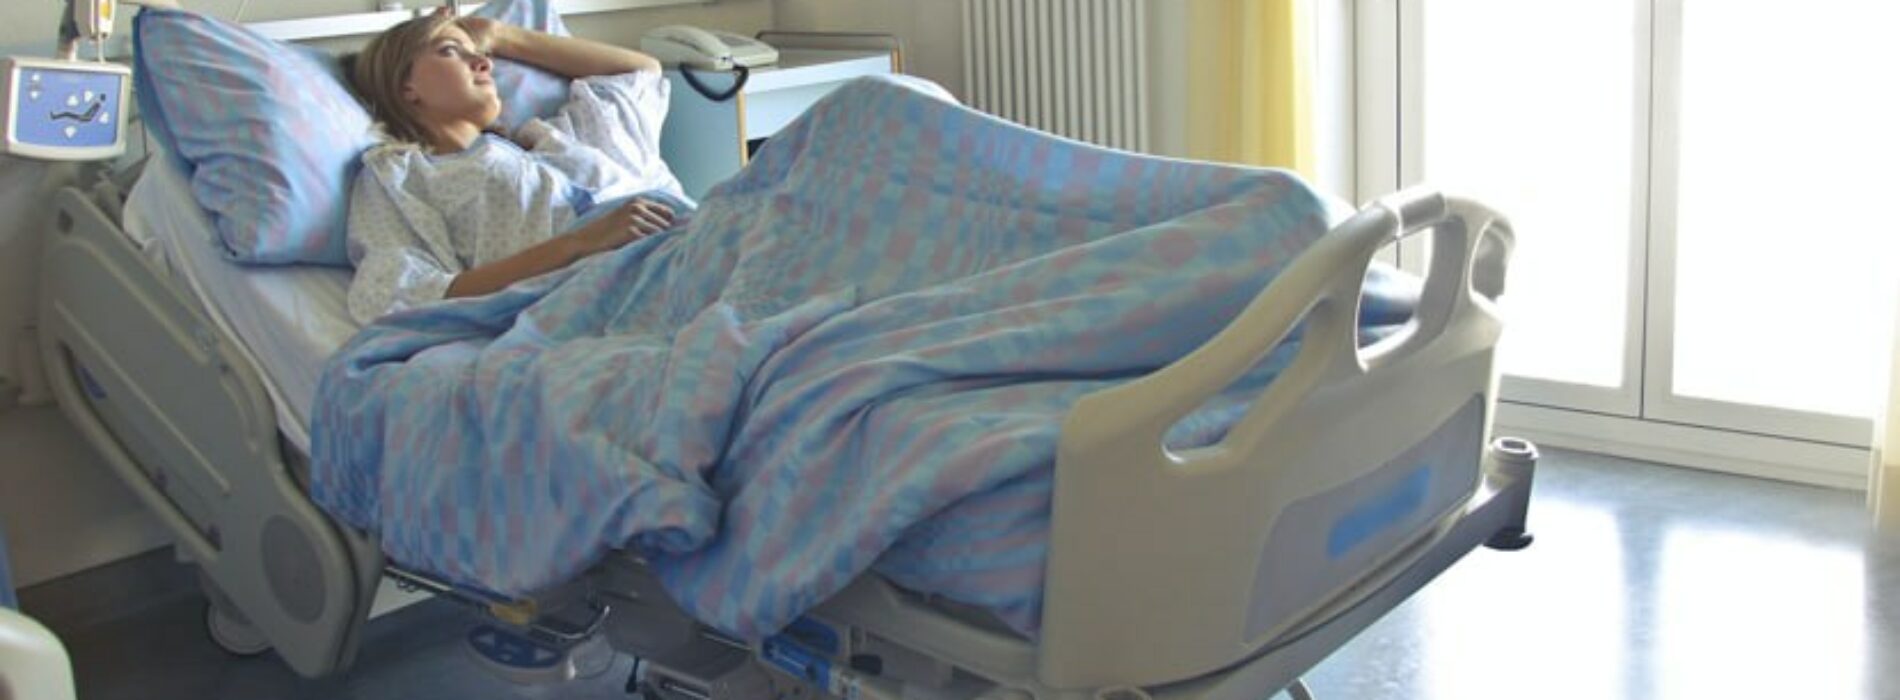 Opieka nad osobami leżącymi – kupić czy wypożyczyć łóżko rehabilitacyjne?